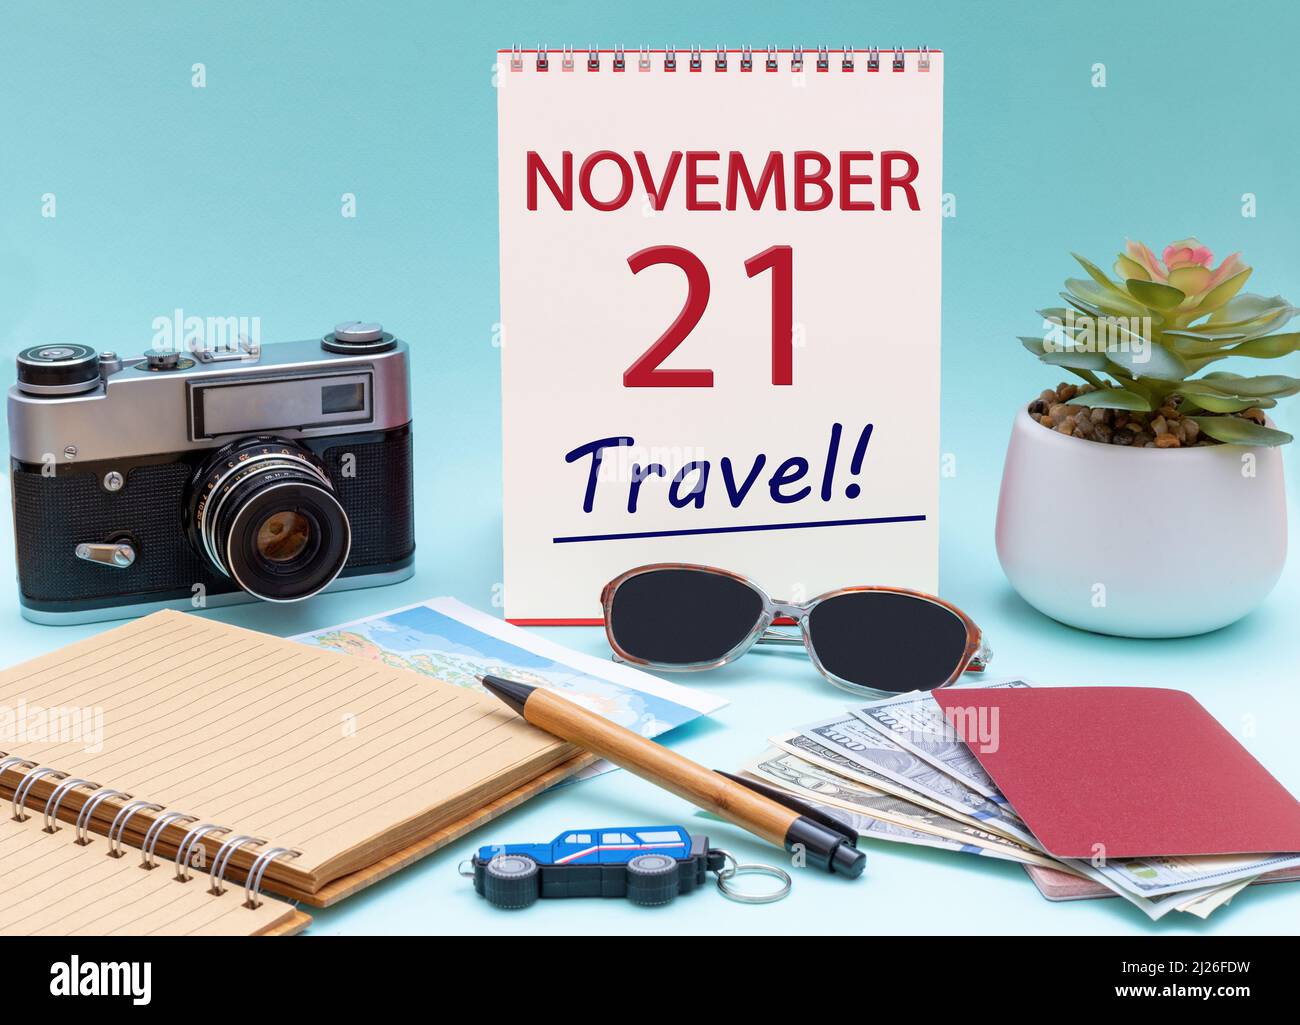 21st novembre. Pianificazione di viaggio, viaggio di vacanza - Calendario con la data 21 novembre occhiali blocco note penna fotocamera cash passaporti. Autunno mese, giorno Foto Stock